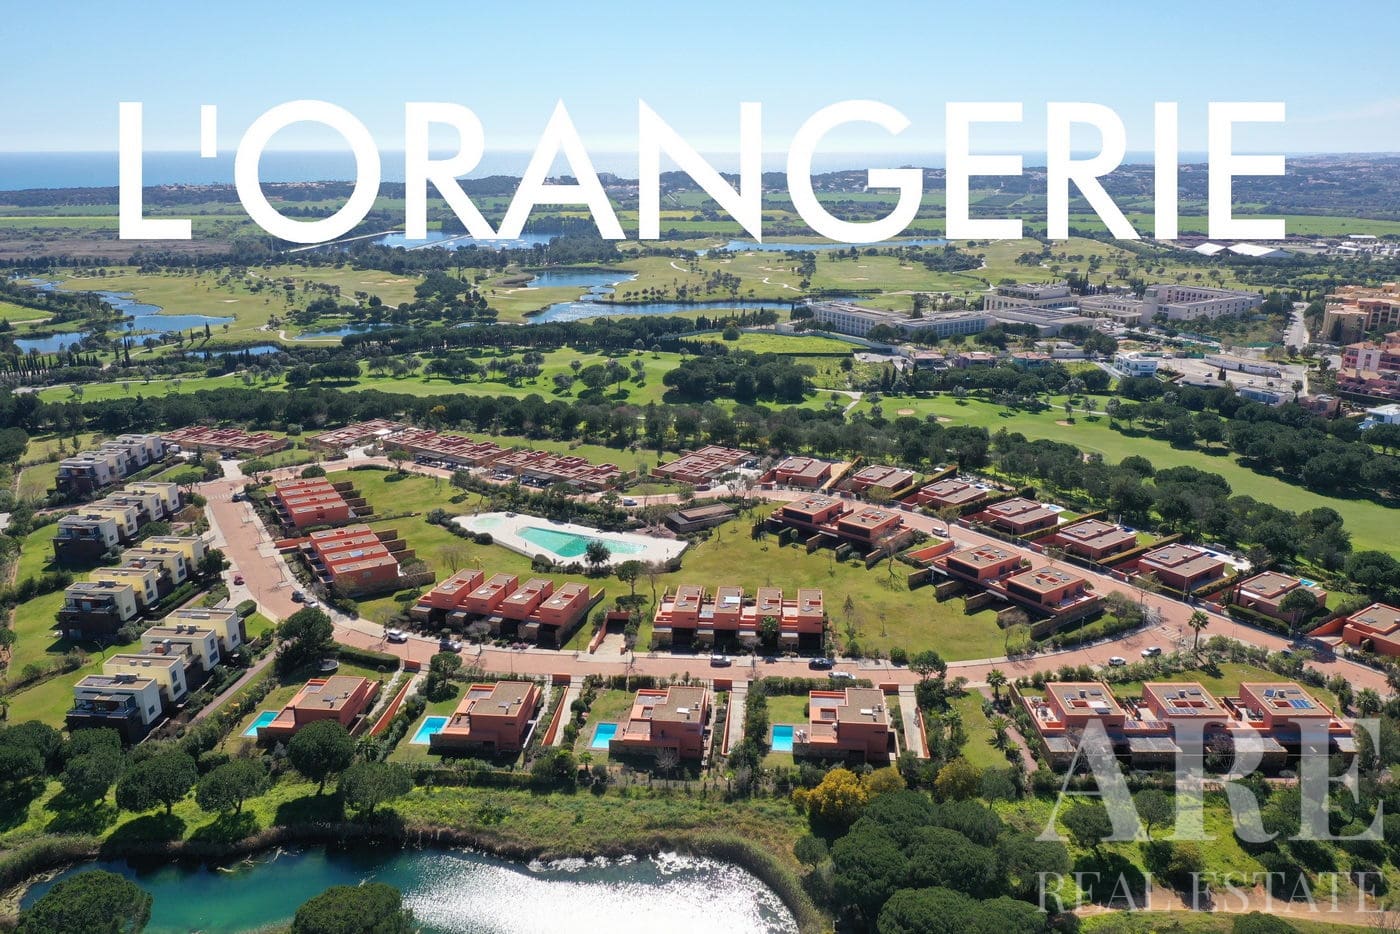 L’Orangerie